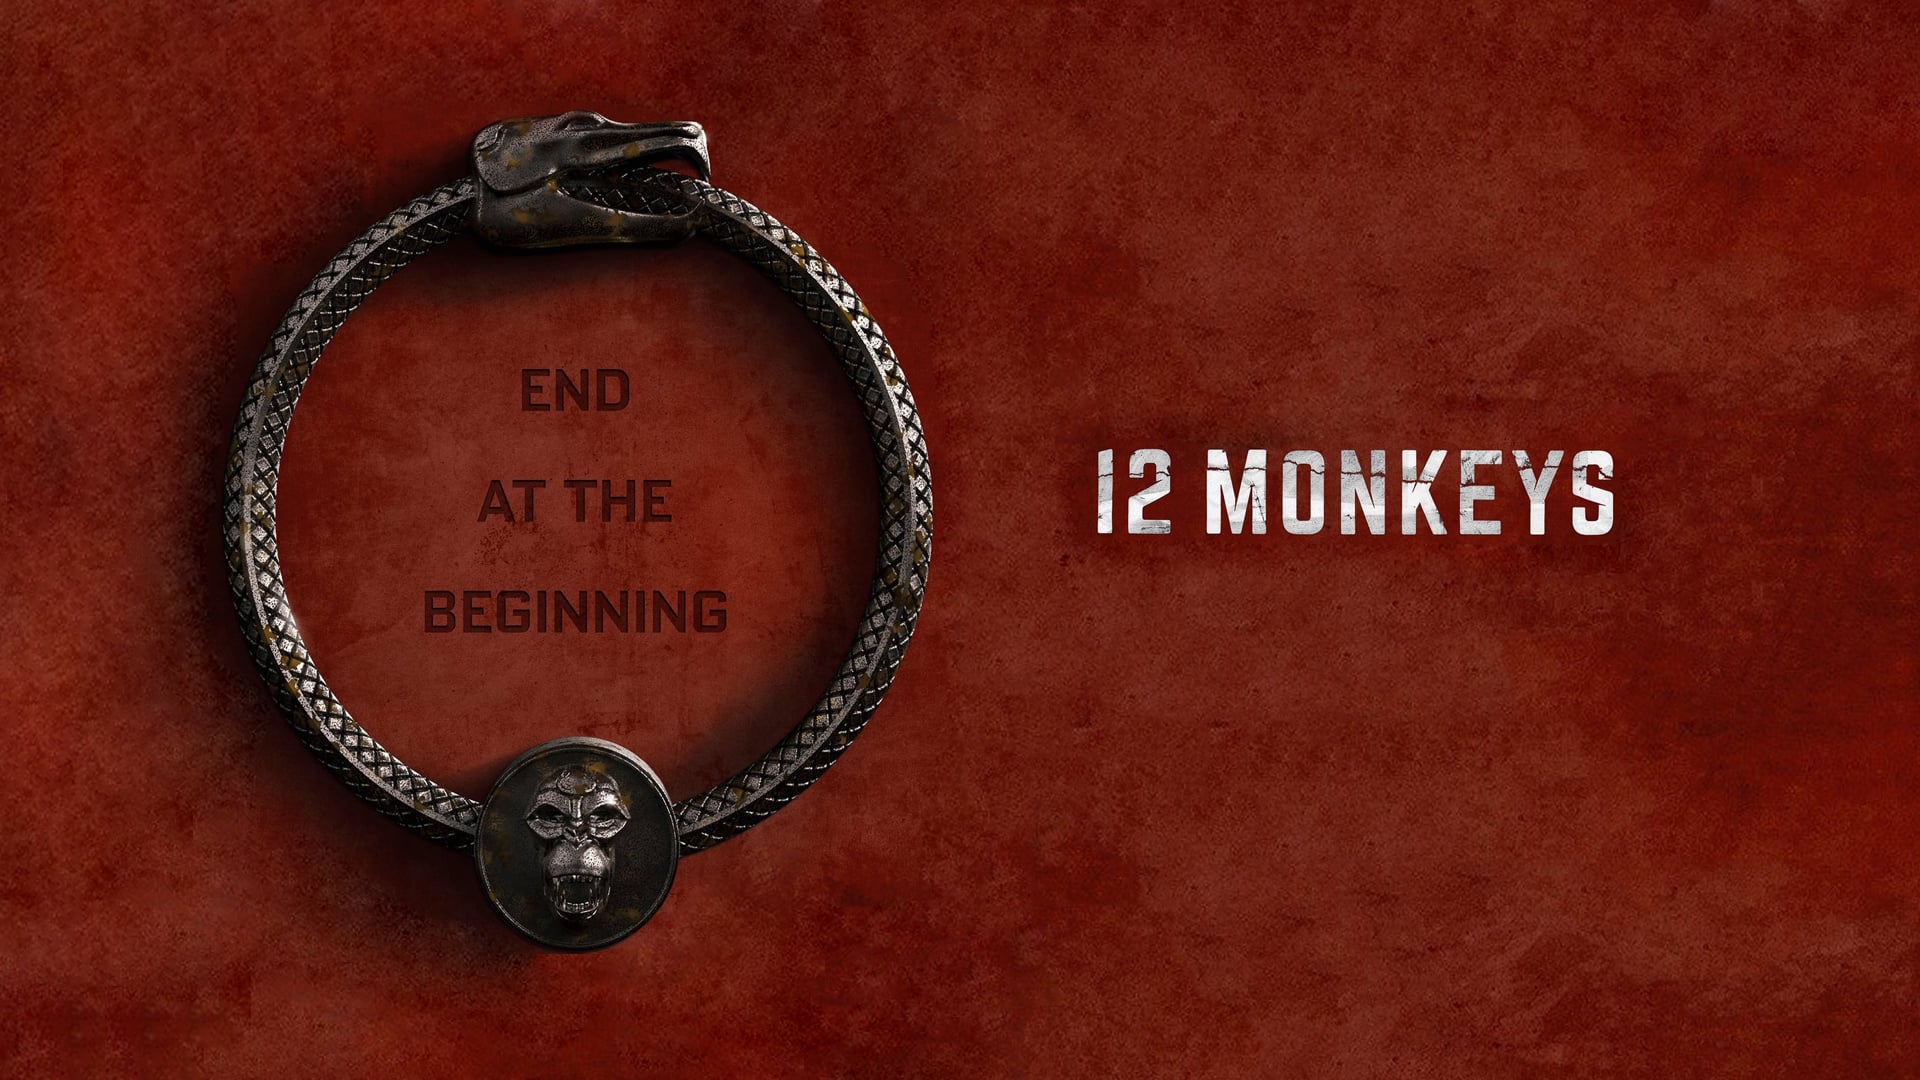 Watch 12 Monkeys(2015) Online Free, 12 Monkeys All Seasons ...